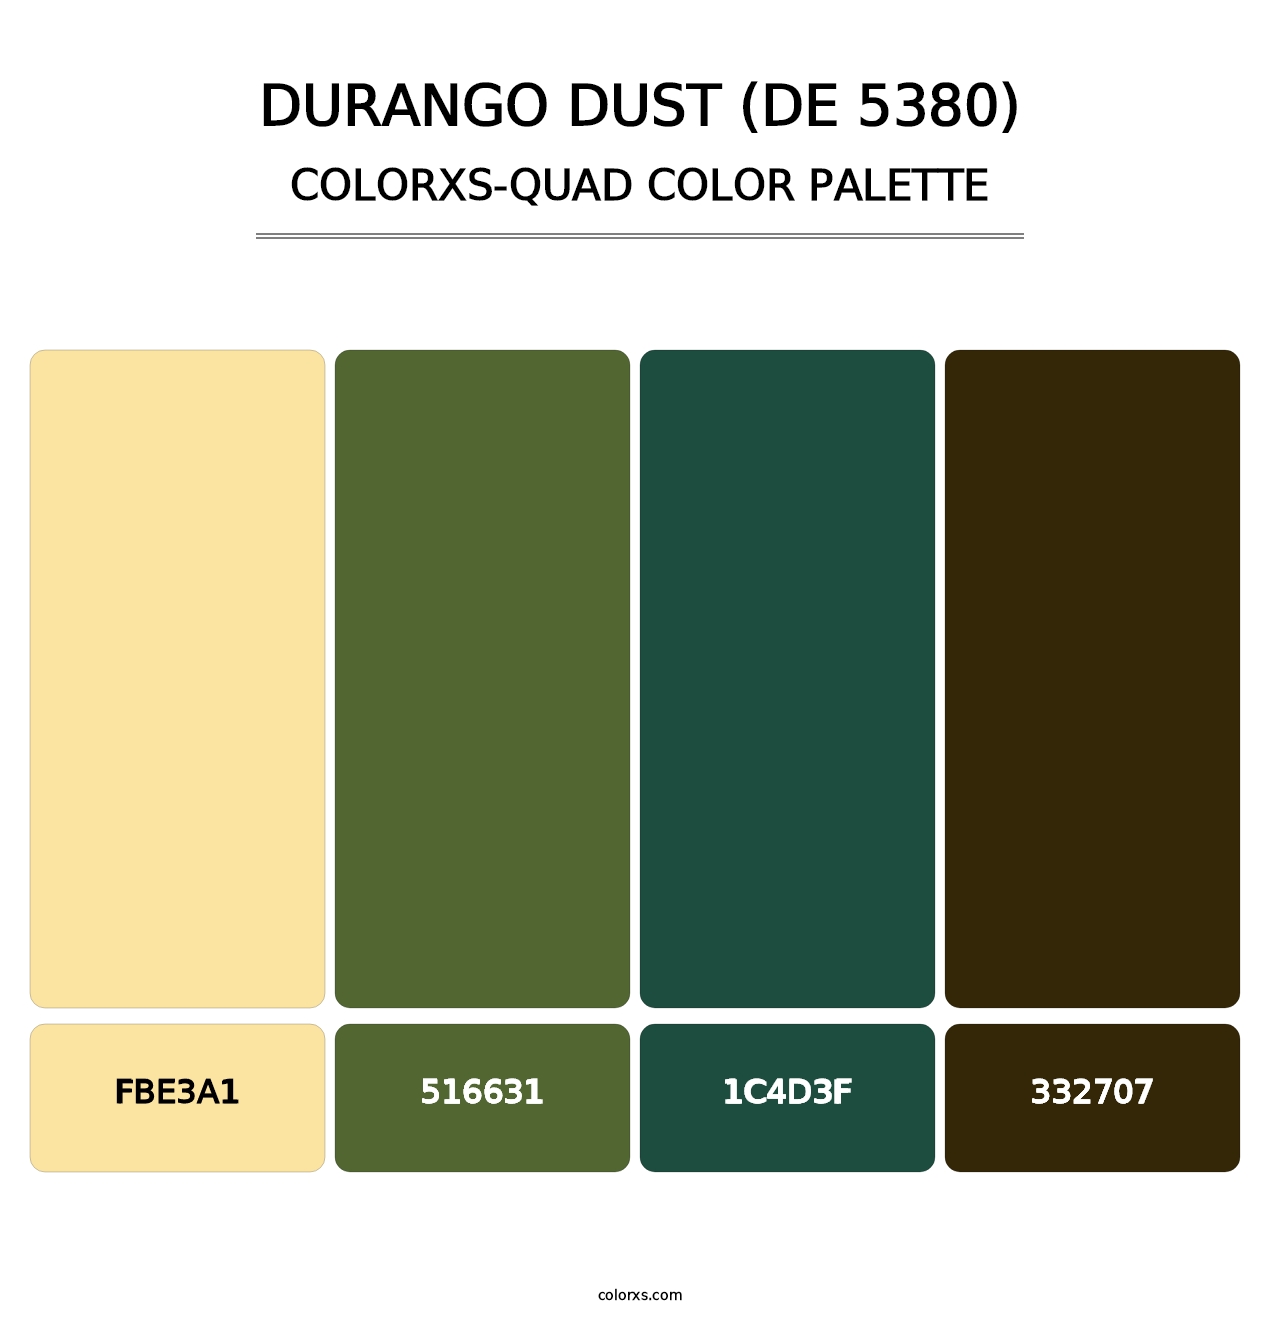 Durango Dust (DE 5380) - Colorxs Quad Palette